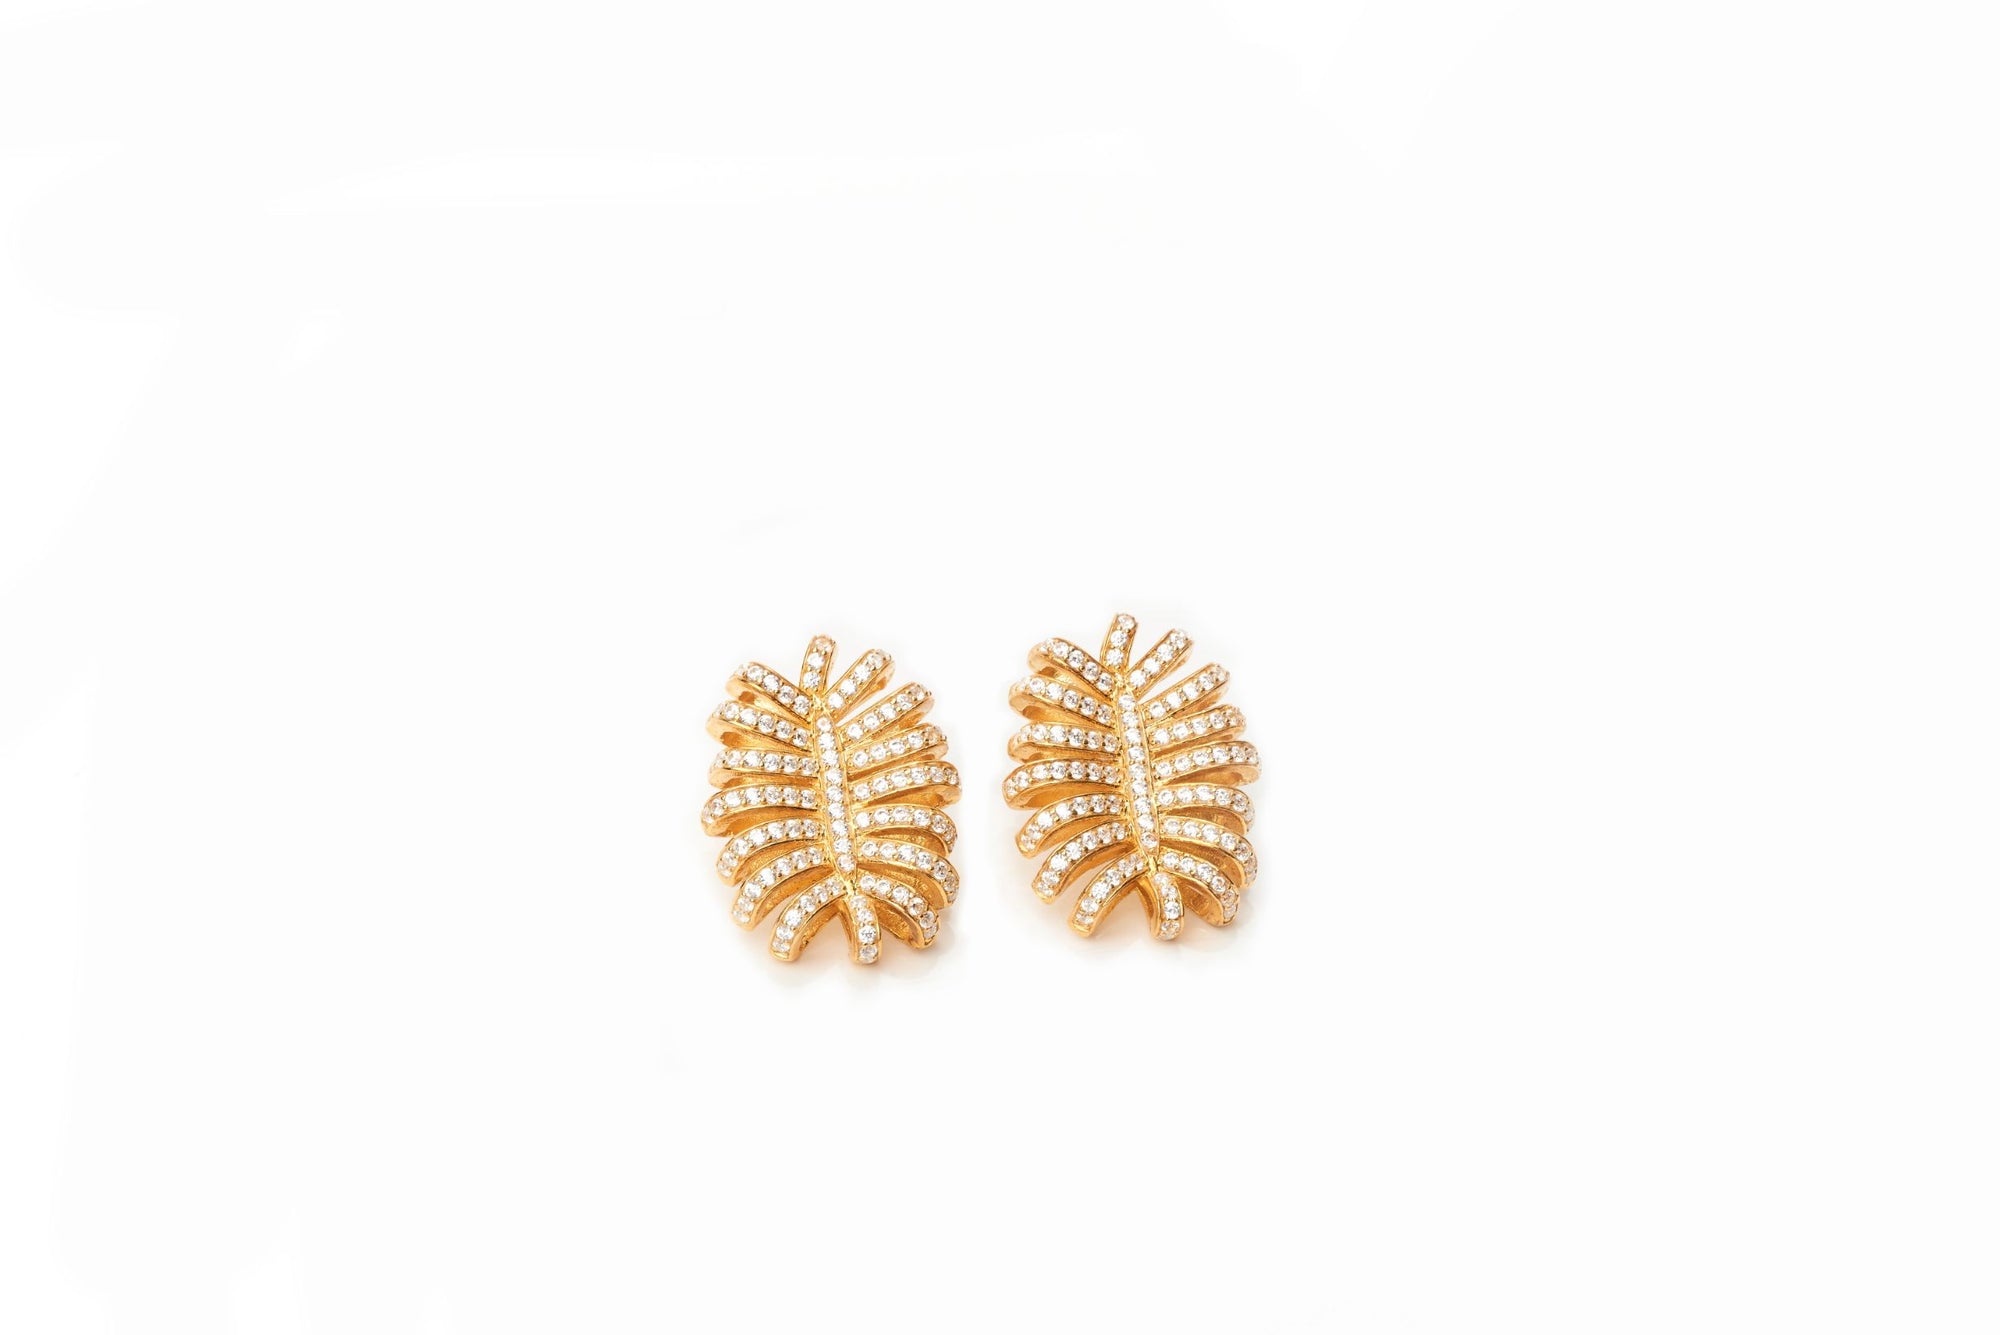 Chestnut Earrings